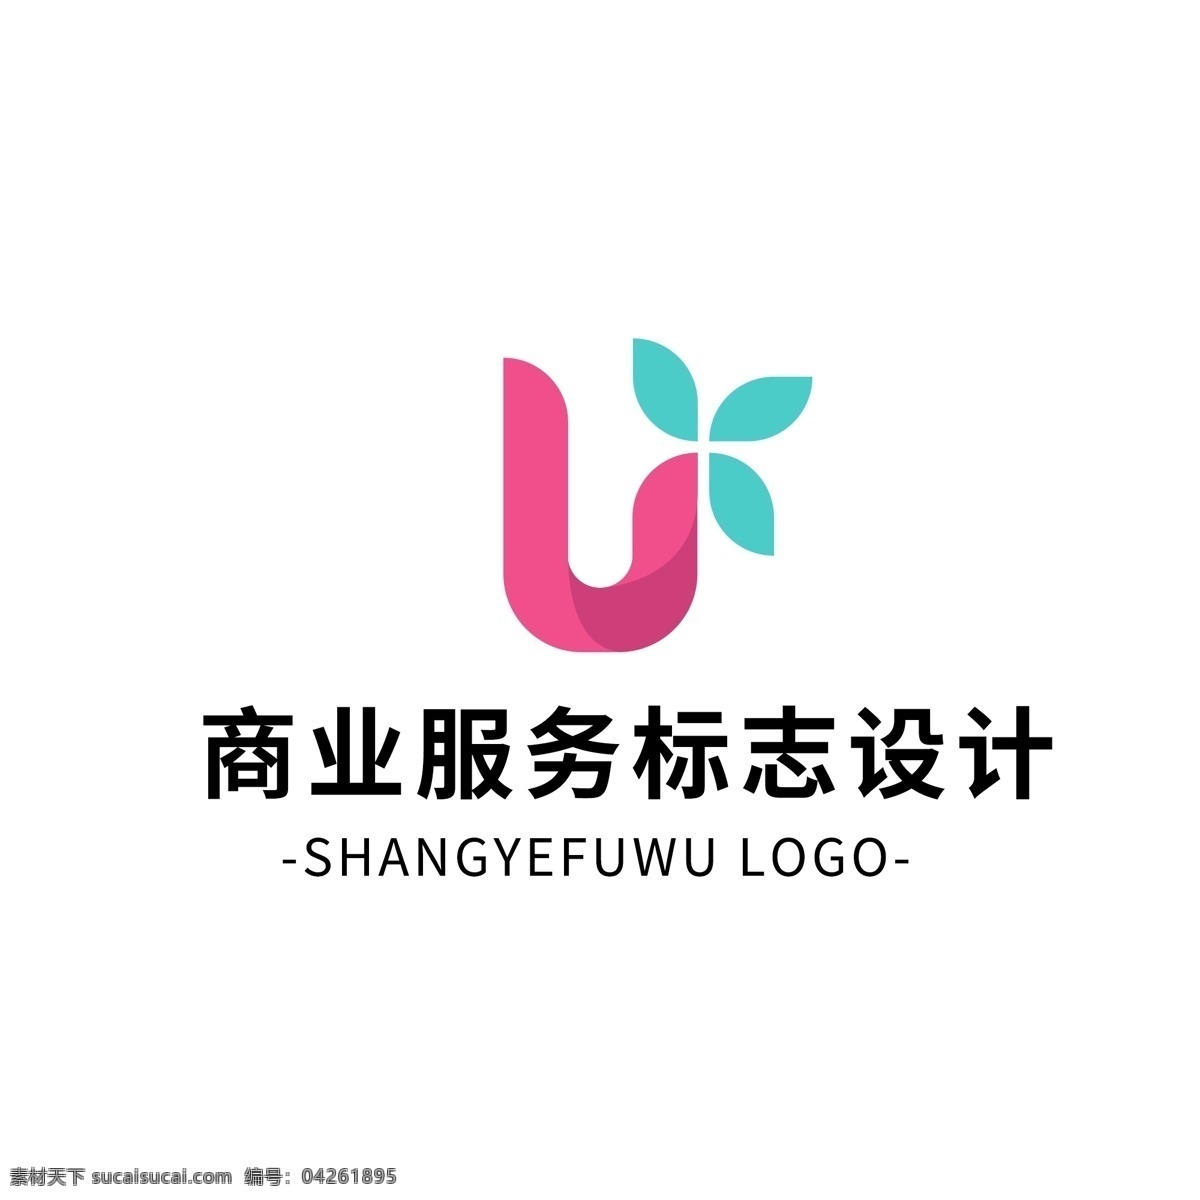 简约 大气 创意 商业服务 logo 标志设计 粉色 图形 矢量